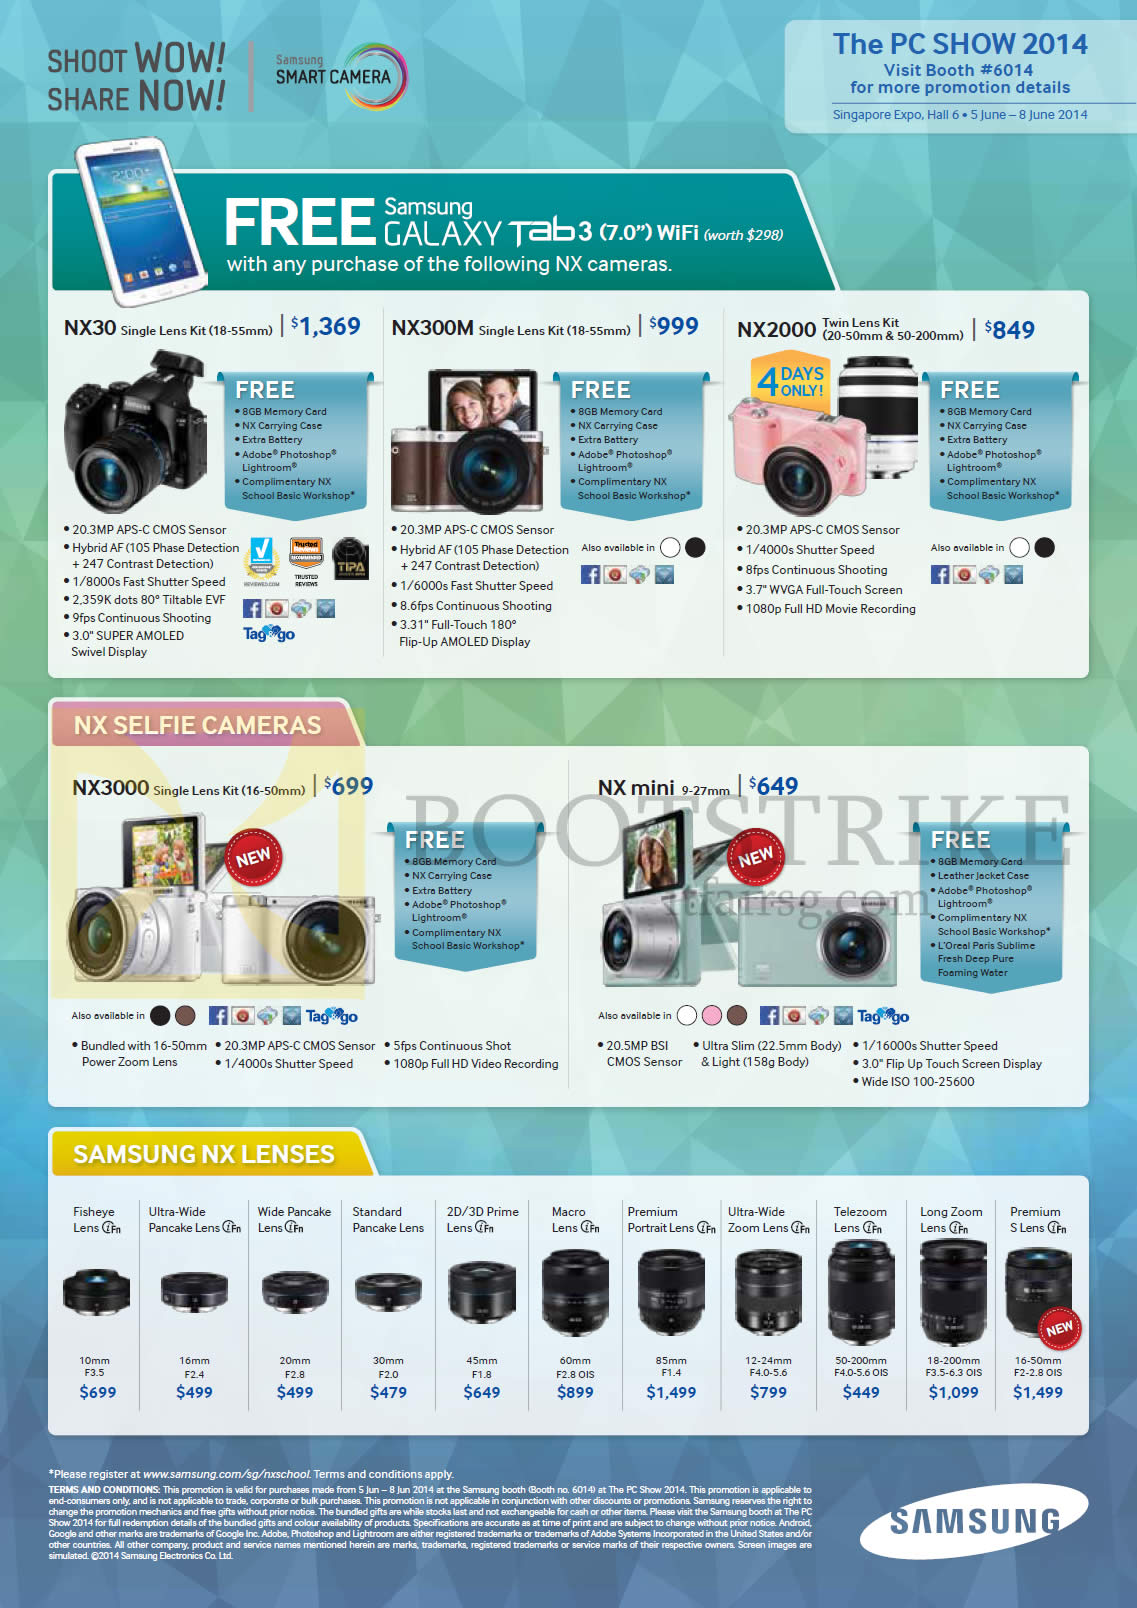 PC SHOW 2014 price list image brochure of Samsung Digital Cameras, NX Lenses, NX30, NX300M, NX2000, NX3000, NX Mini